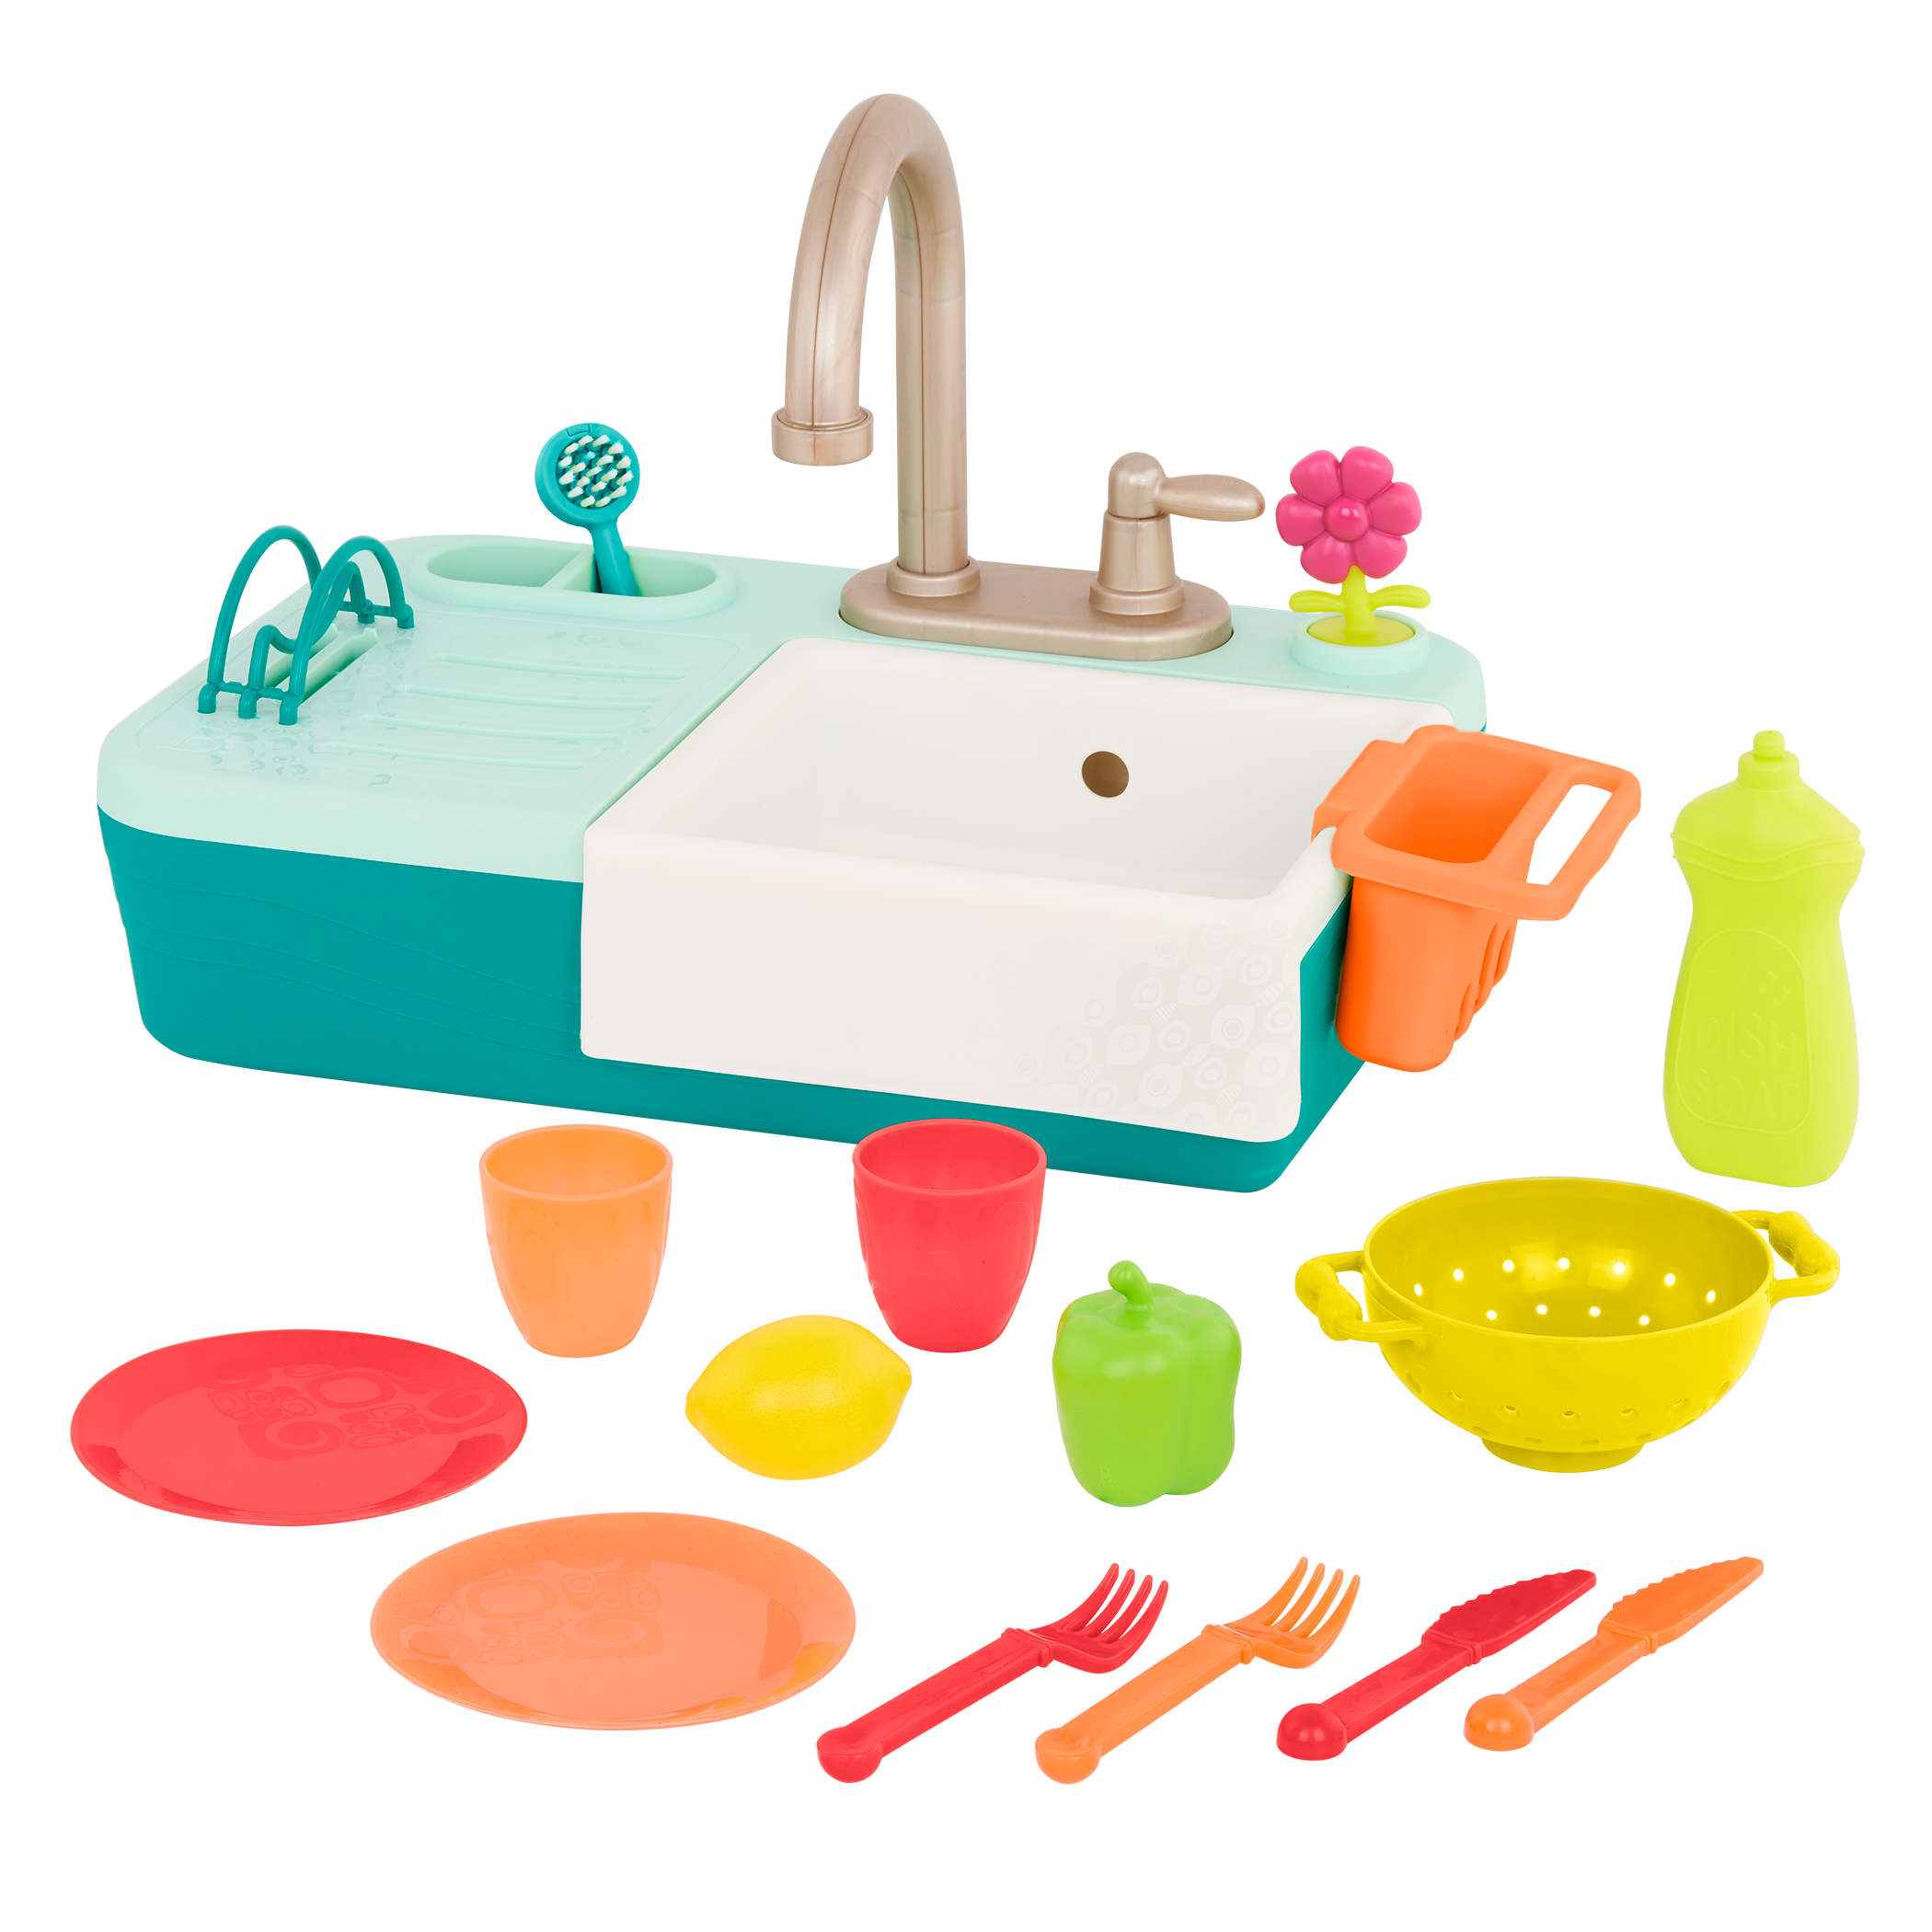 Splash-n-Scrub Sink, Sink Play Set